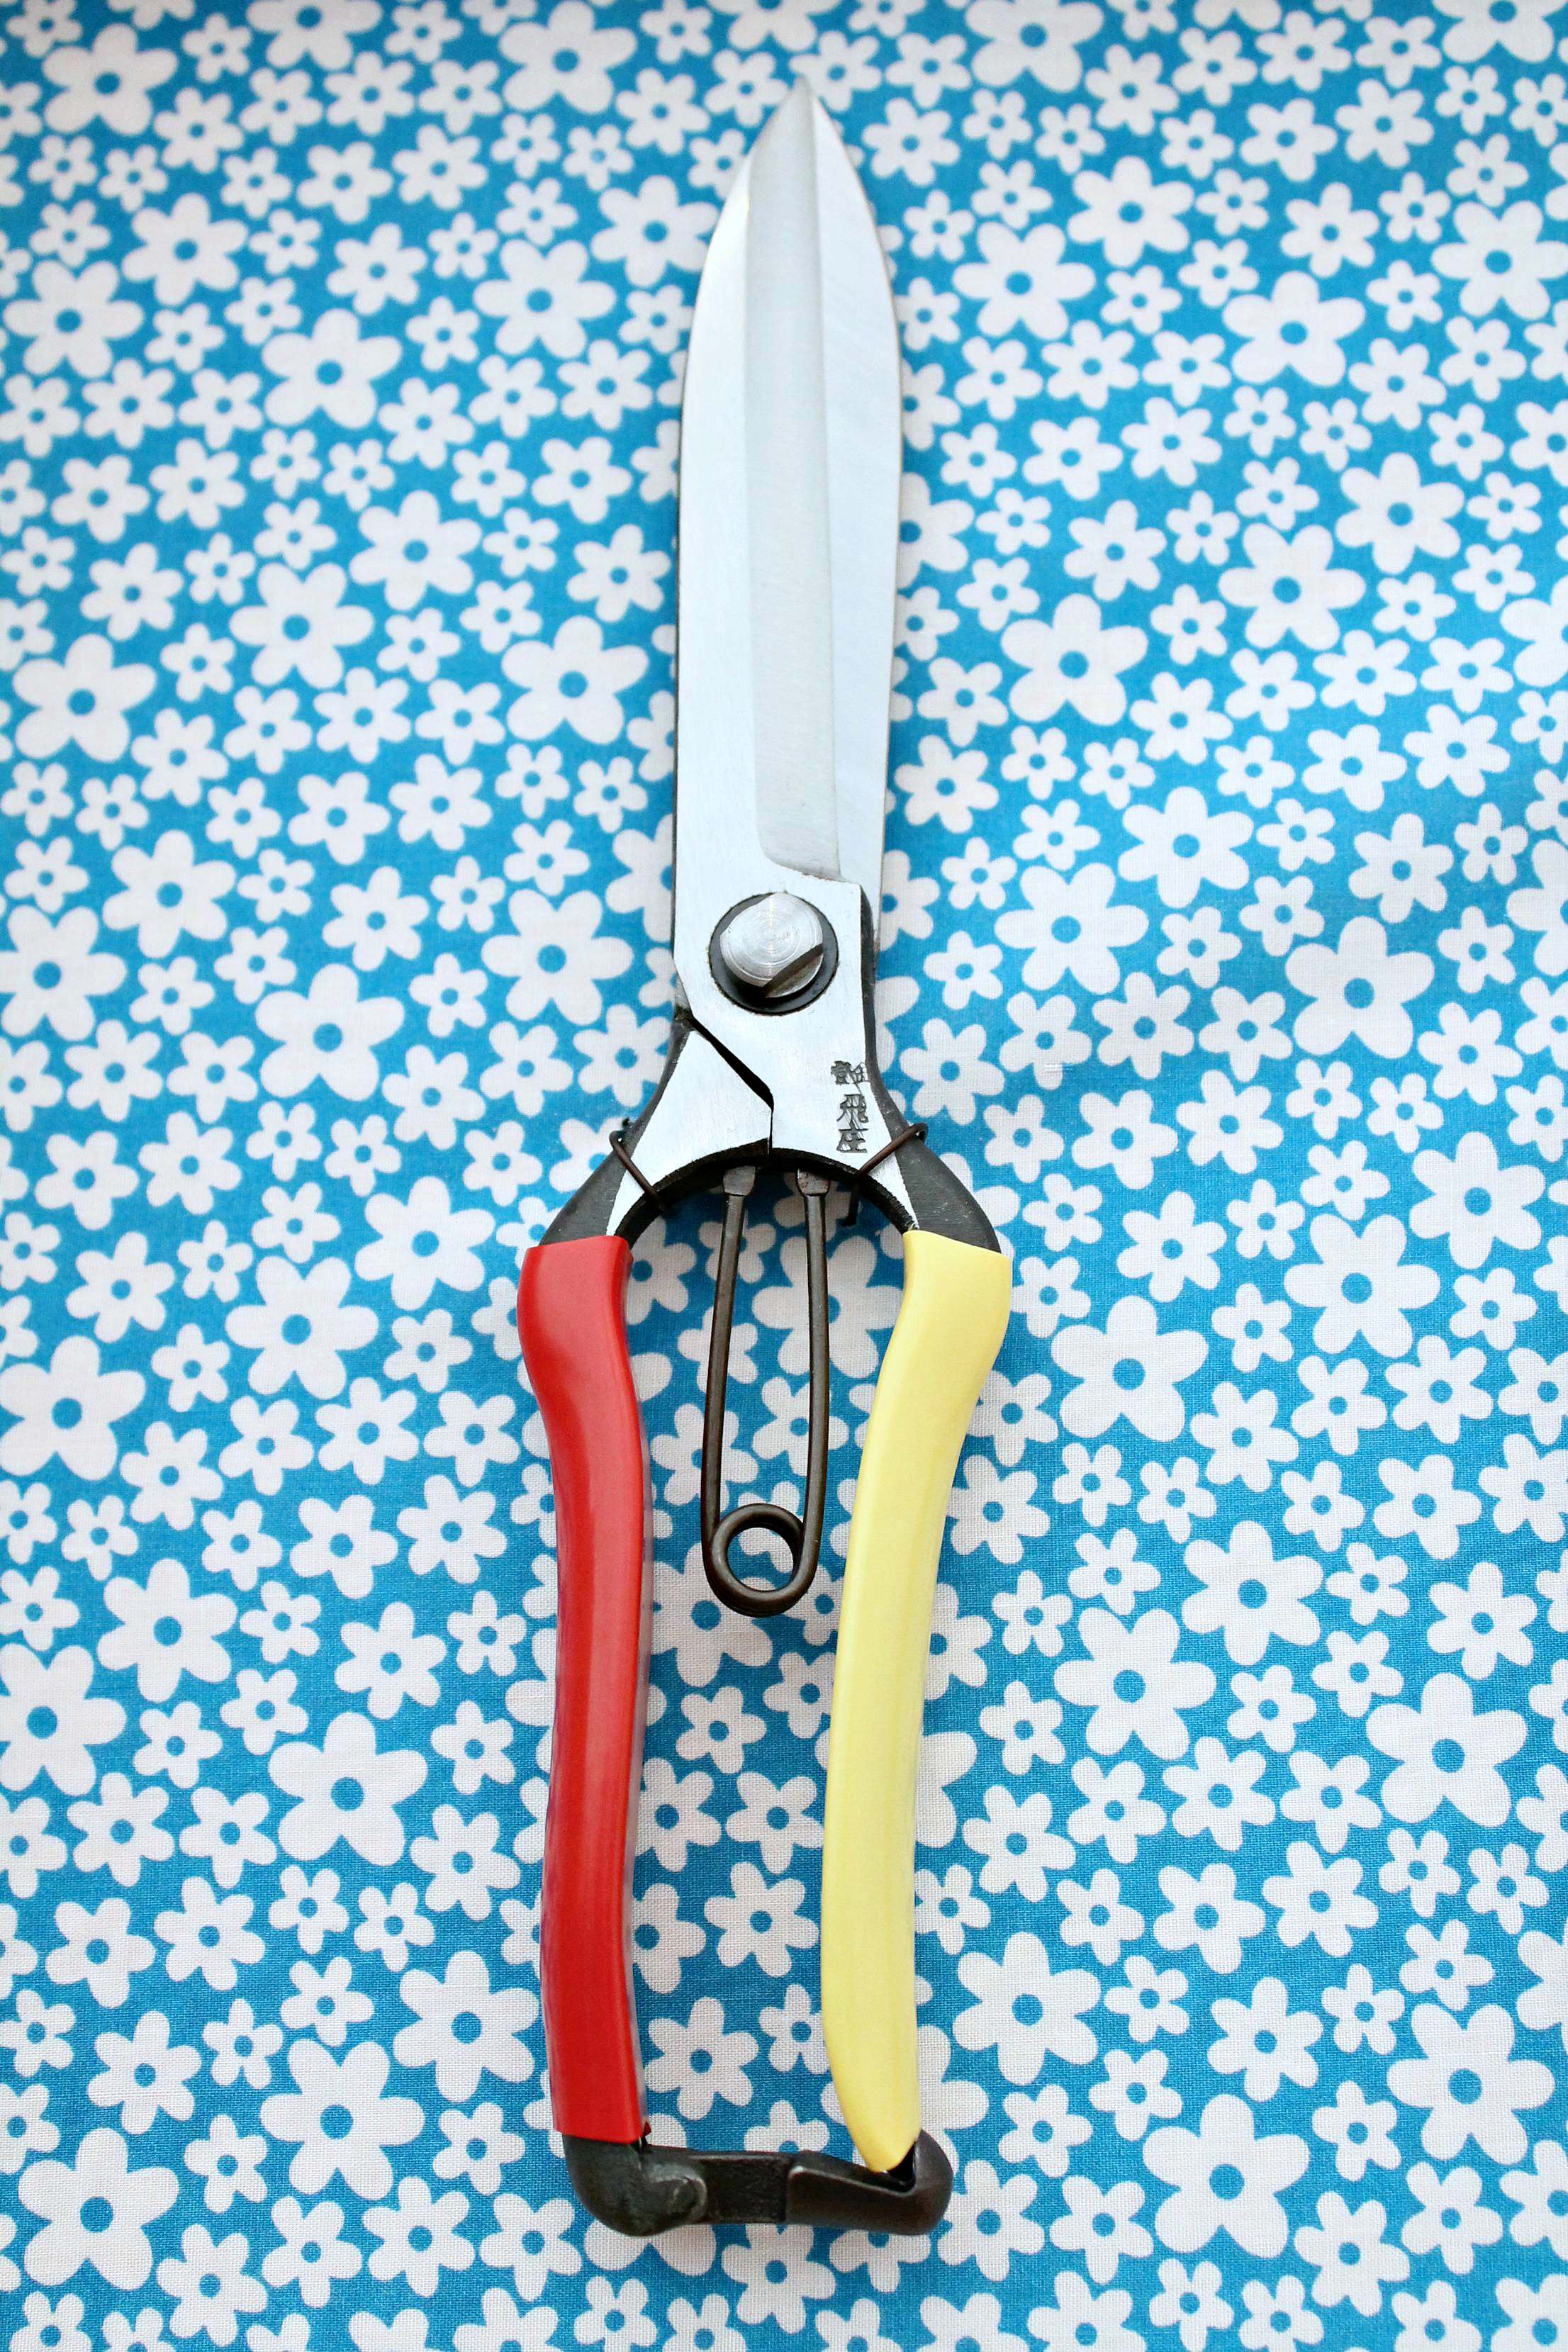 Okatsune-scissors-photo-by-Little-Big-Bell